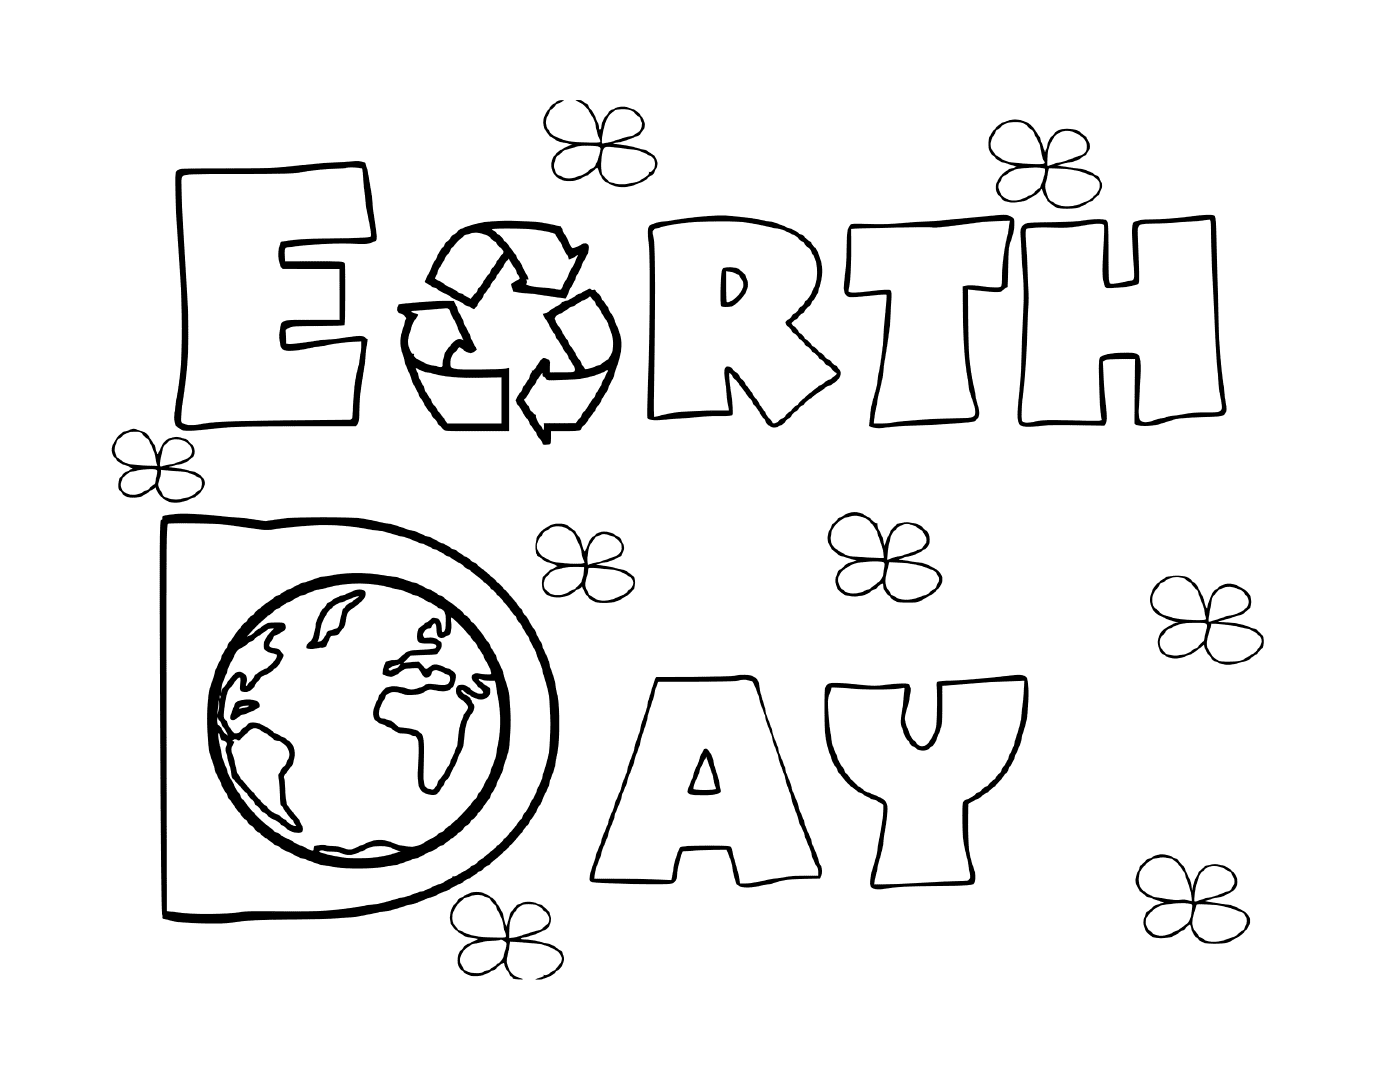  Actividad para el Día de la Tierra 